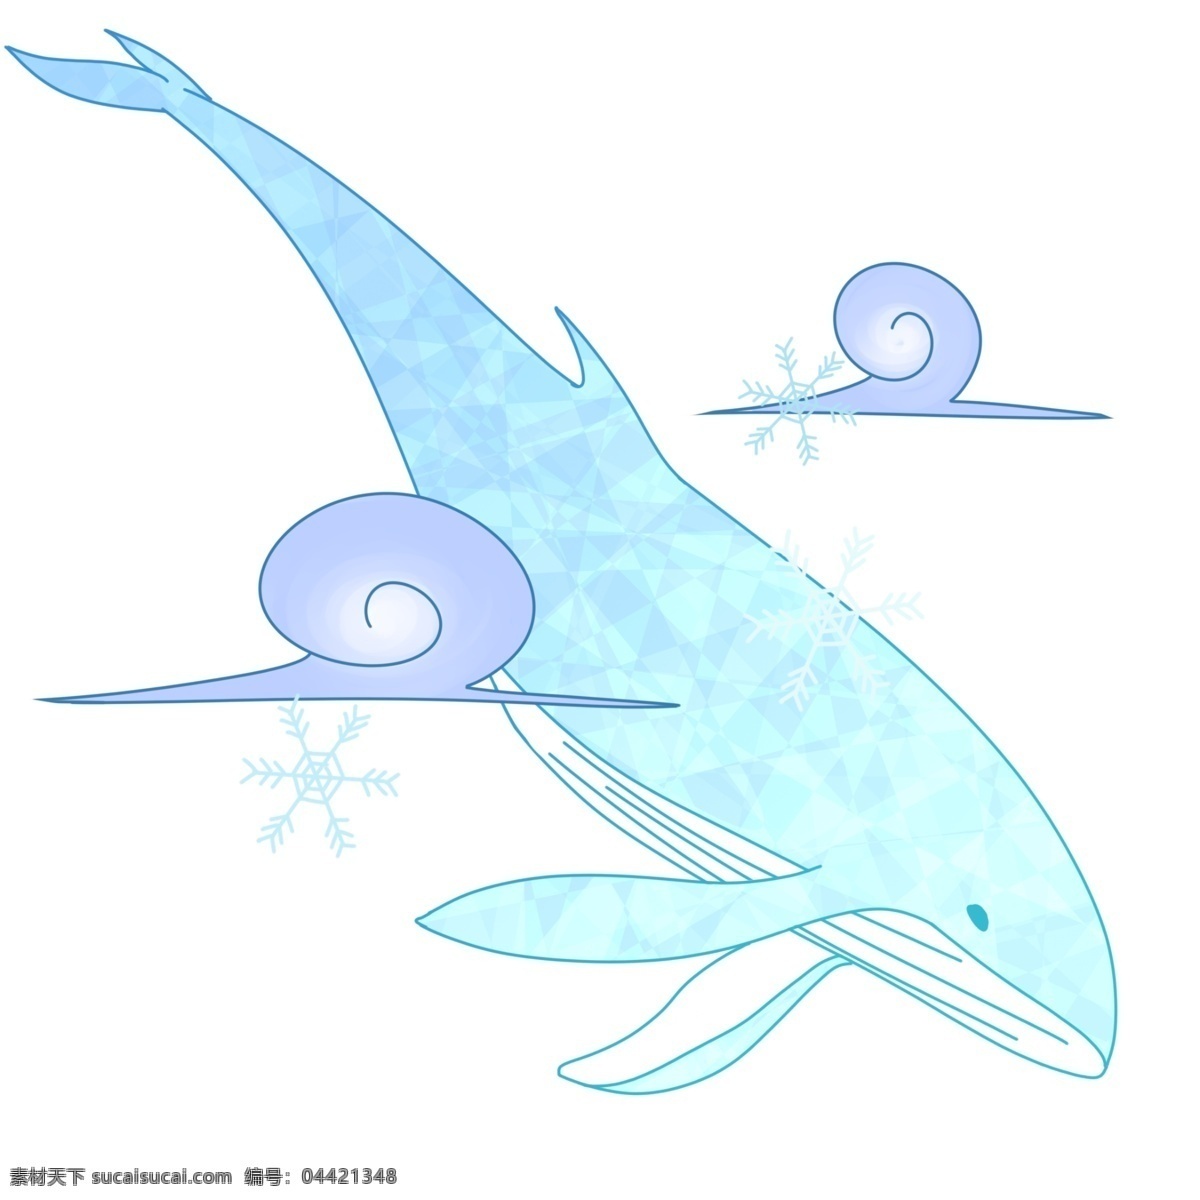 手绘 蓝色 梦幻 鲸鱼 插画 梦幻鲸鱼 可爱鲸鱼 童话鲸鱼 彩色鲸鱼 大鲸鱼 卡通梦幻鲸鱼 鲸鱼插画